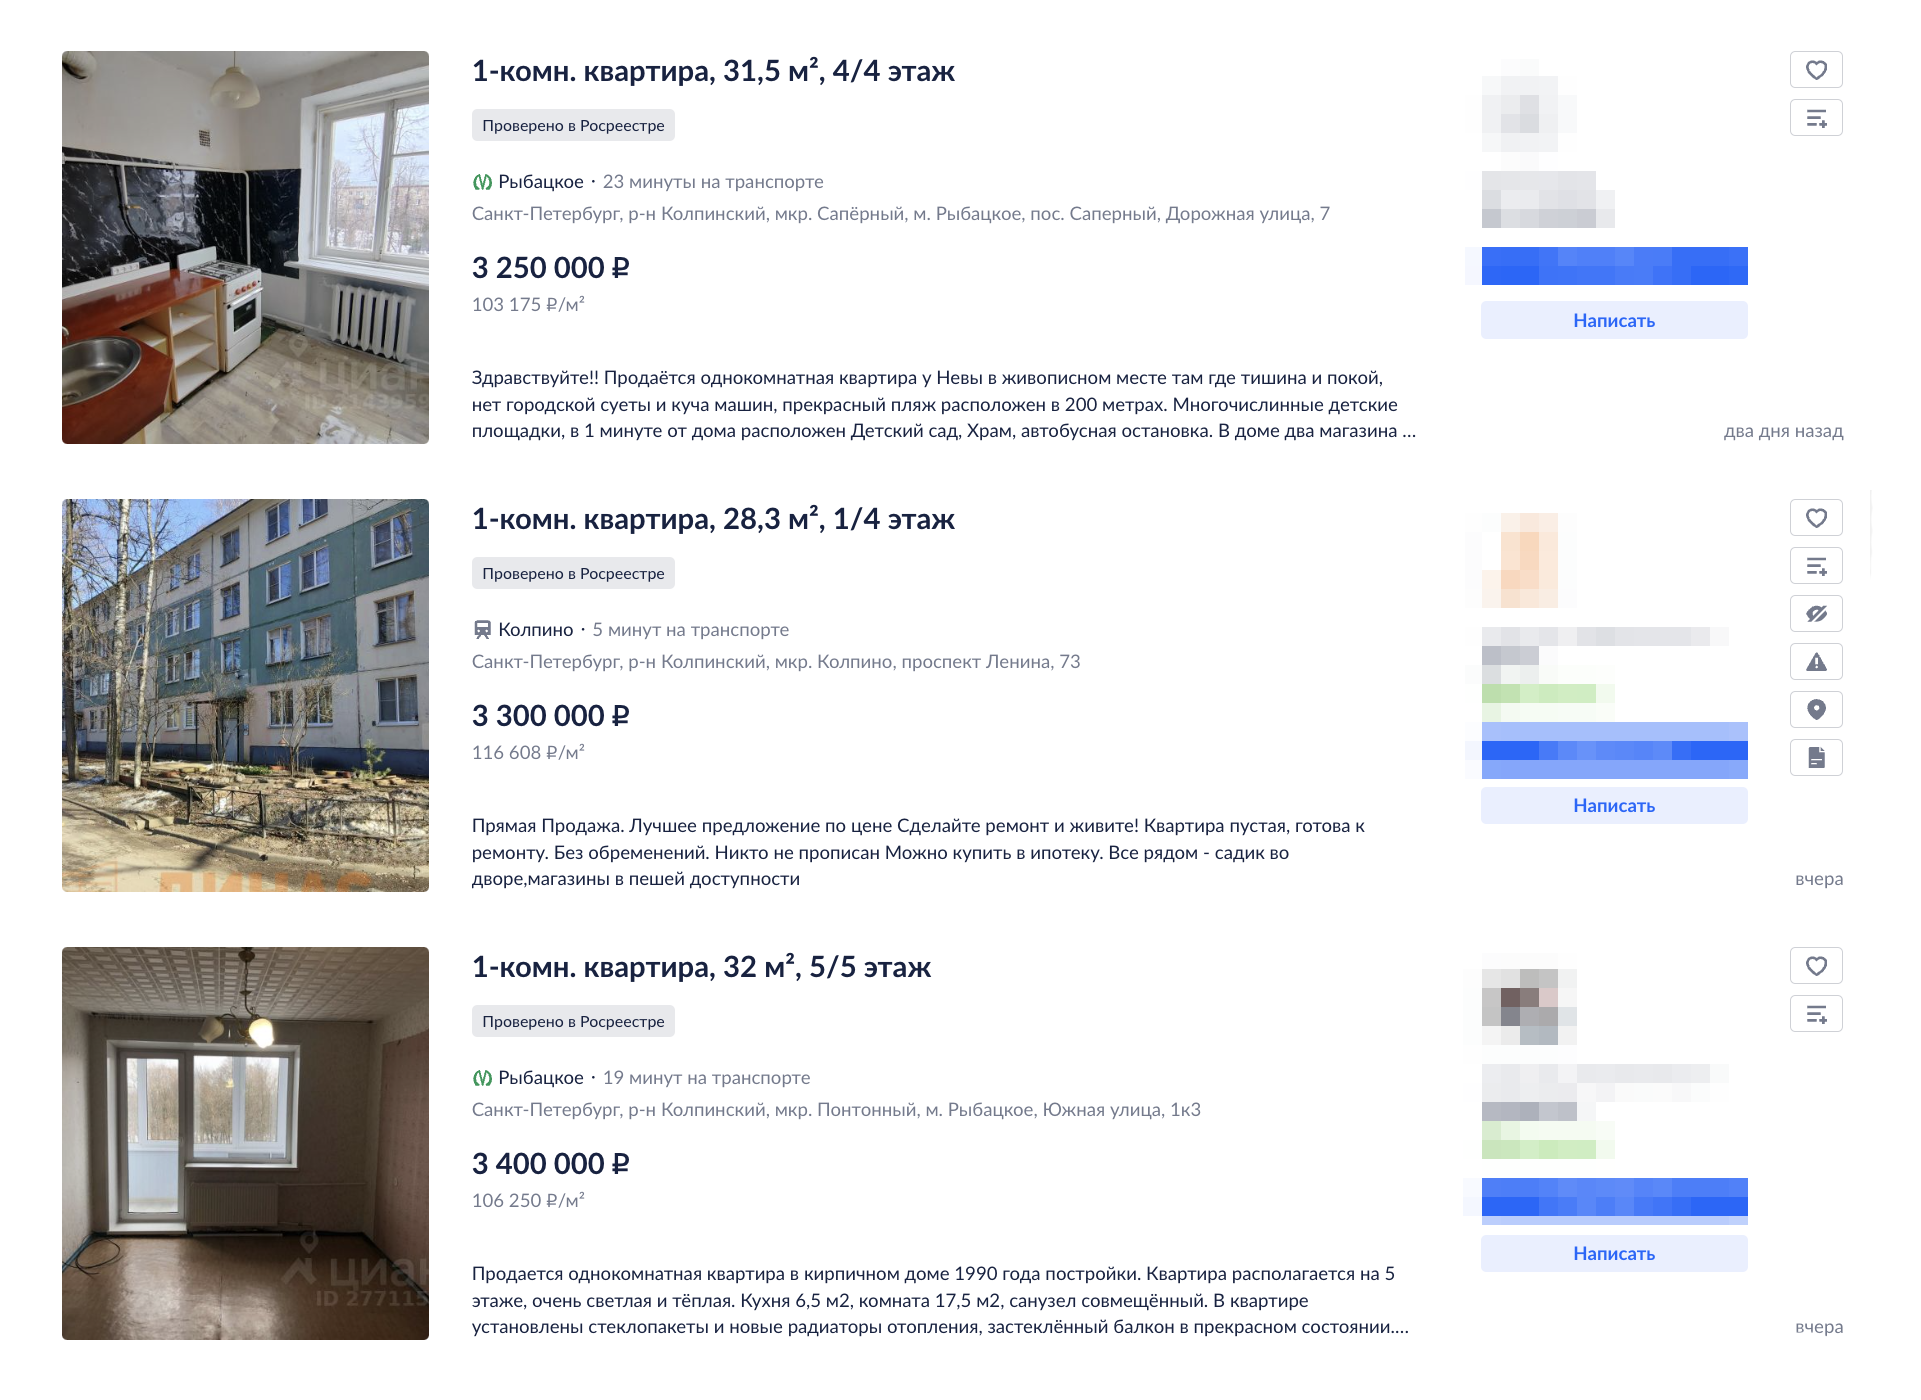 Цены на однушки стартуют с отметки 3 500 000 ₽. Столько стоят однокомнатные квартиры в кирпичных домах 50⁠—⁠60⁠-⁠х годов постройки, которые риелторы называют кирпичными хрущевками. Аналогичные предложения чаще всего встречаются в Красном Селе. Источник: spb.cian.ru